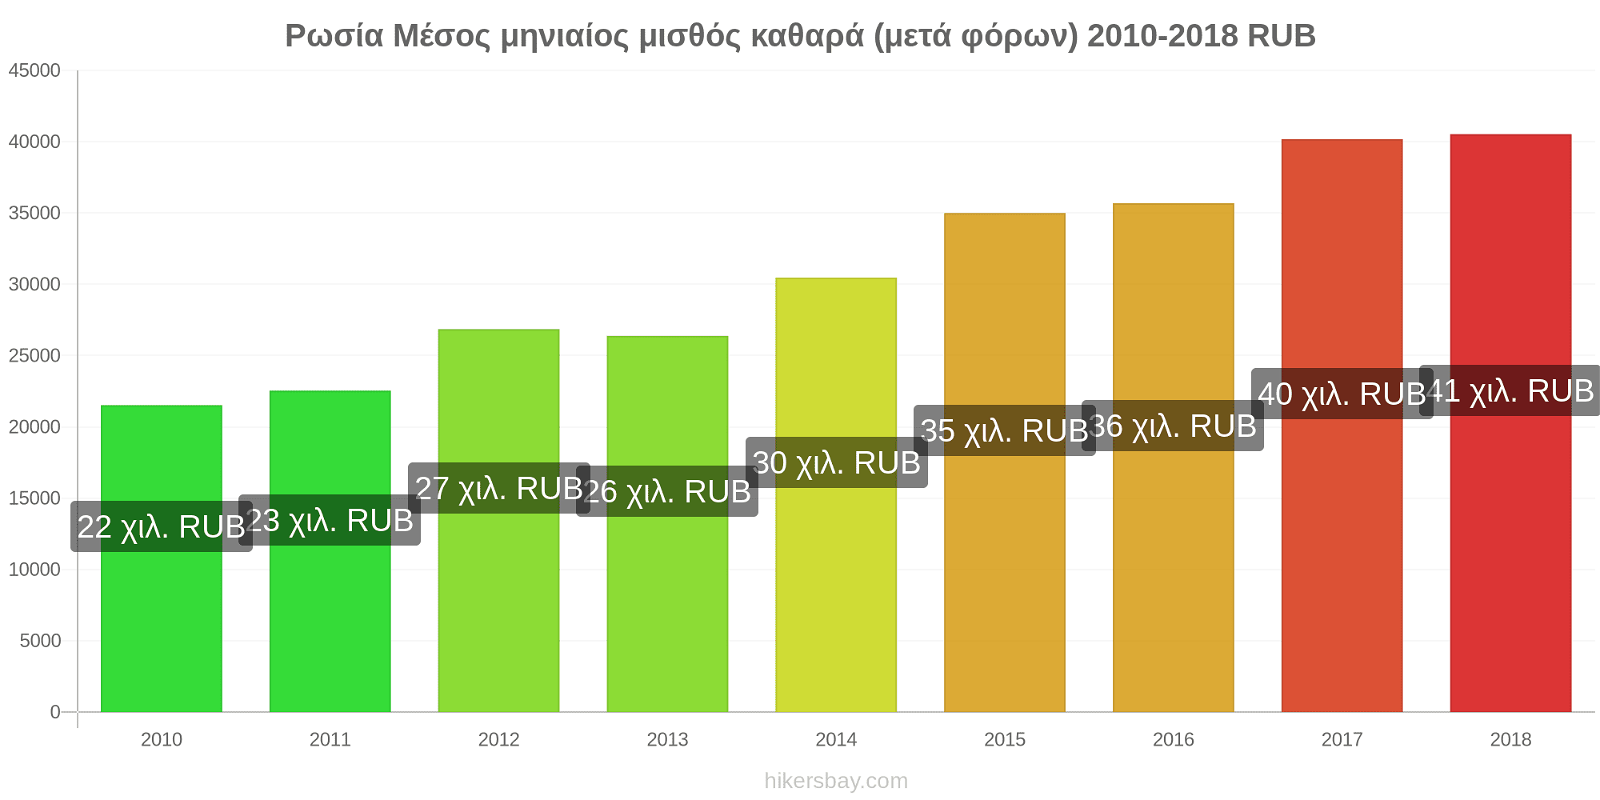 Ρωσία αλλαγές τιμών Μέσος μηνιαίος μισθός καθαρά (μετά φόρων) hikersbay.com